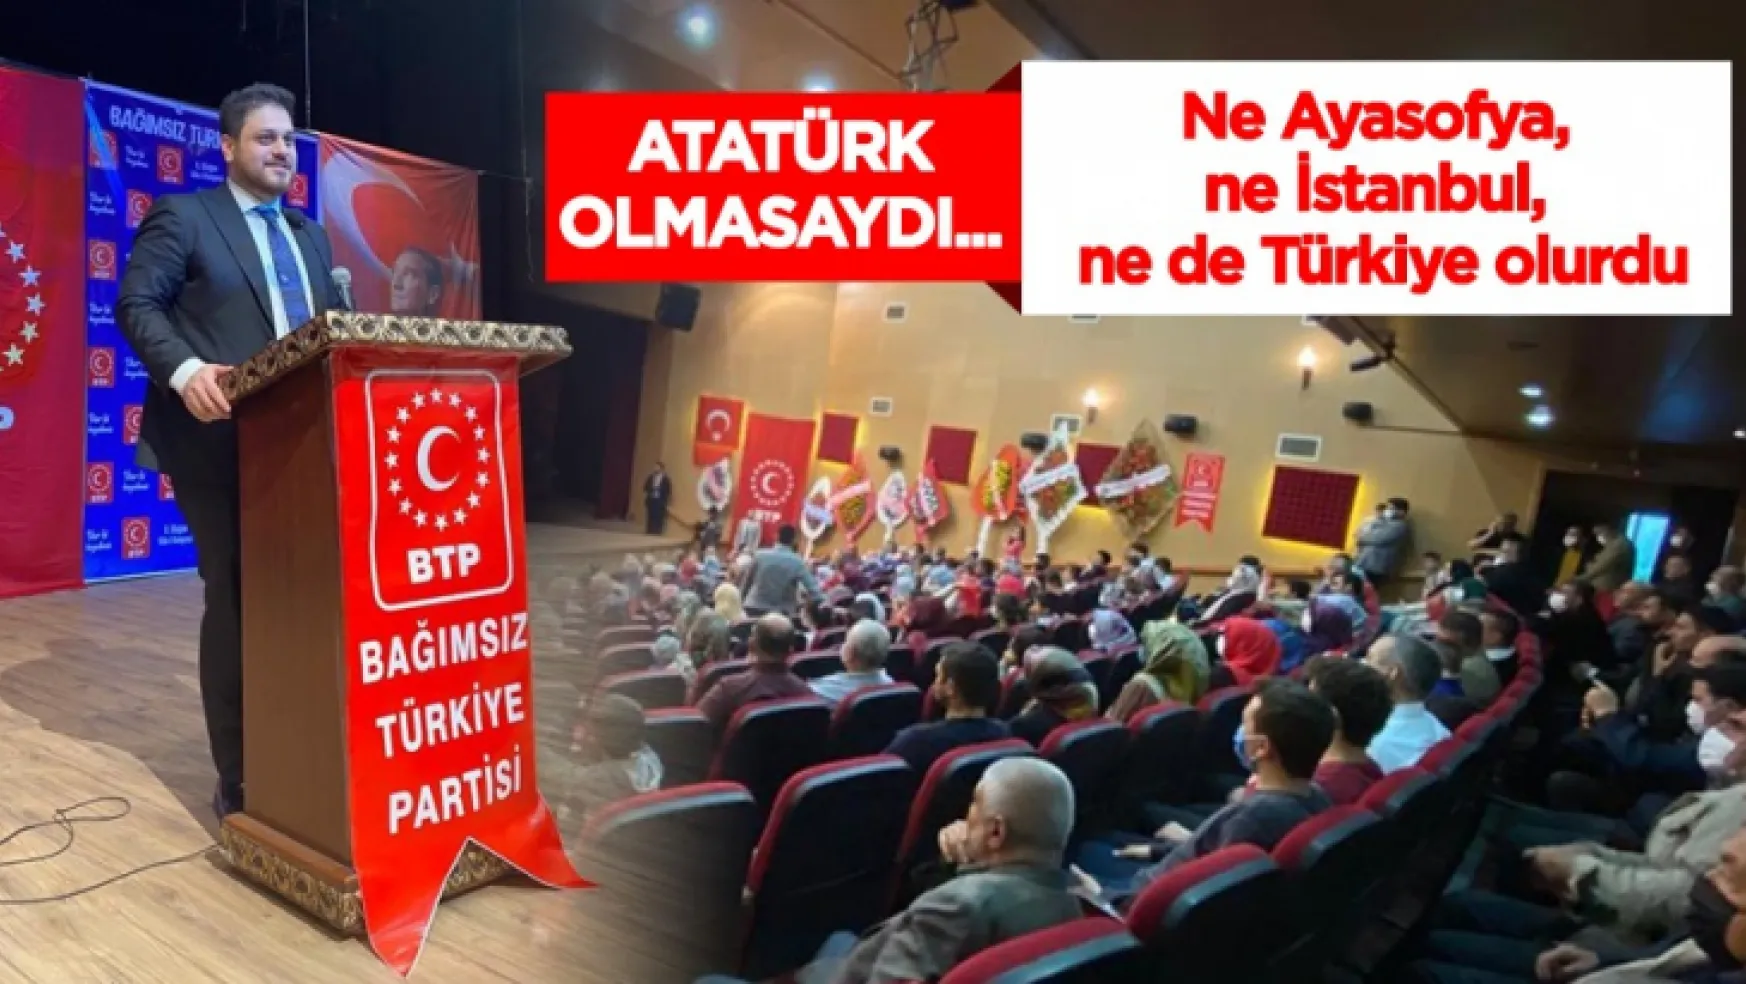 Atatürk olmasaydı ne Ayasofya, ne İstanbul, ne de Türkiye olacaktı